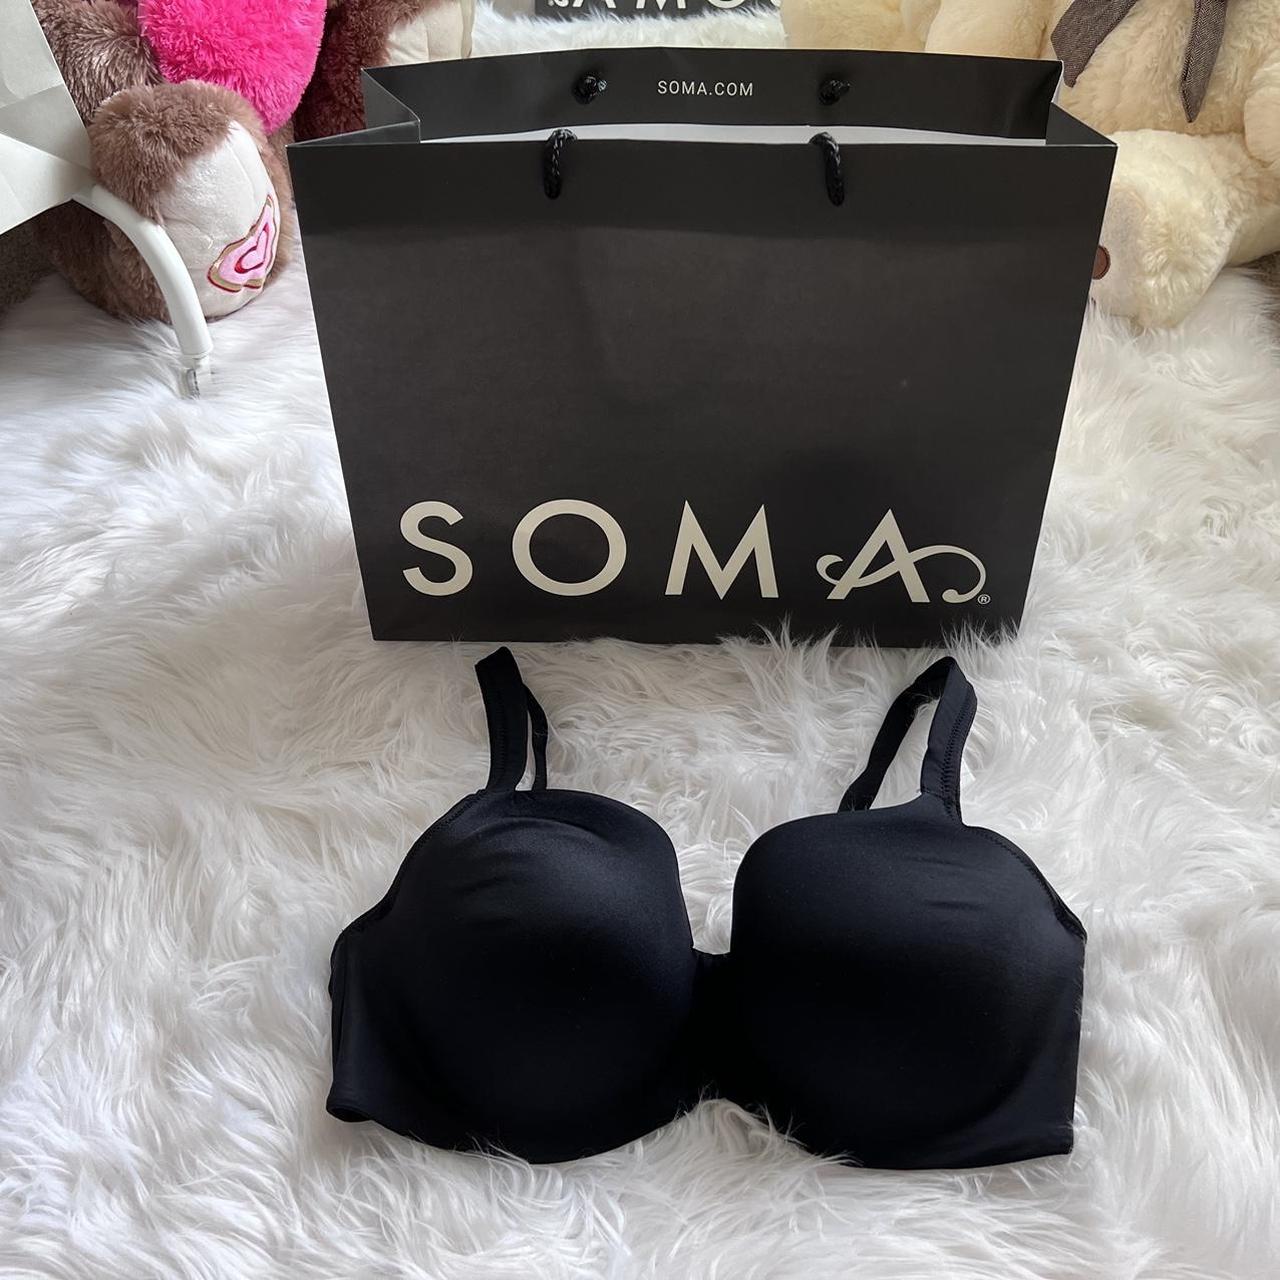 Soma Stunning Support Balconette Bra, Black